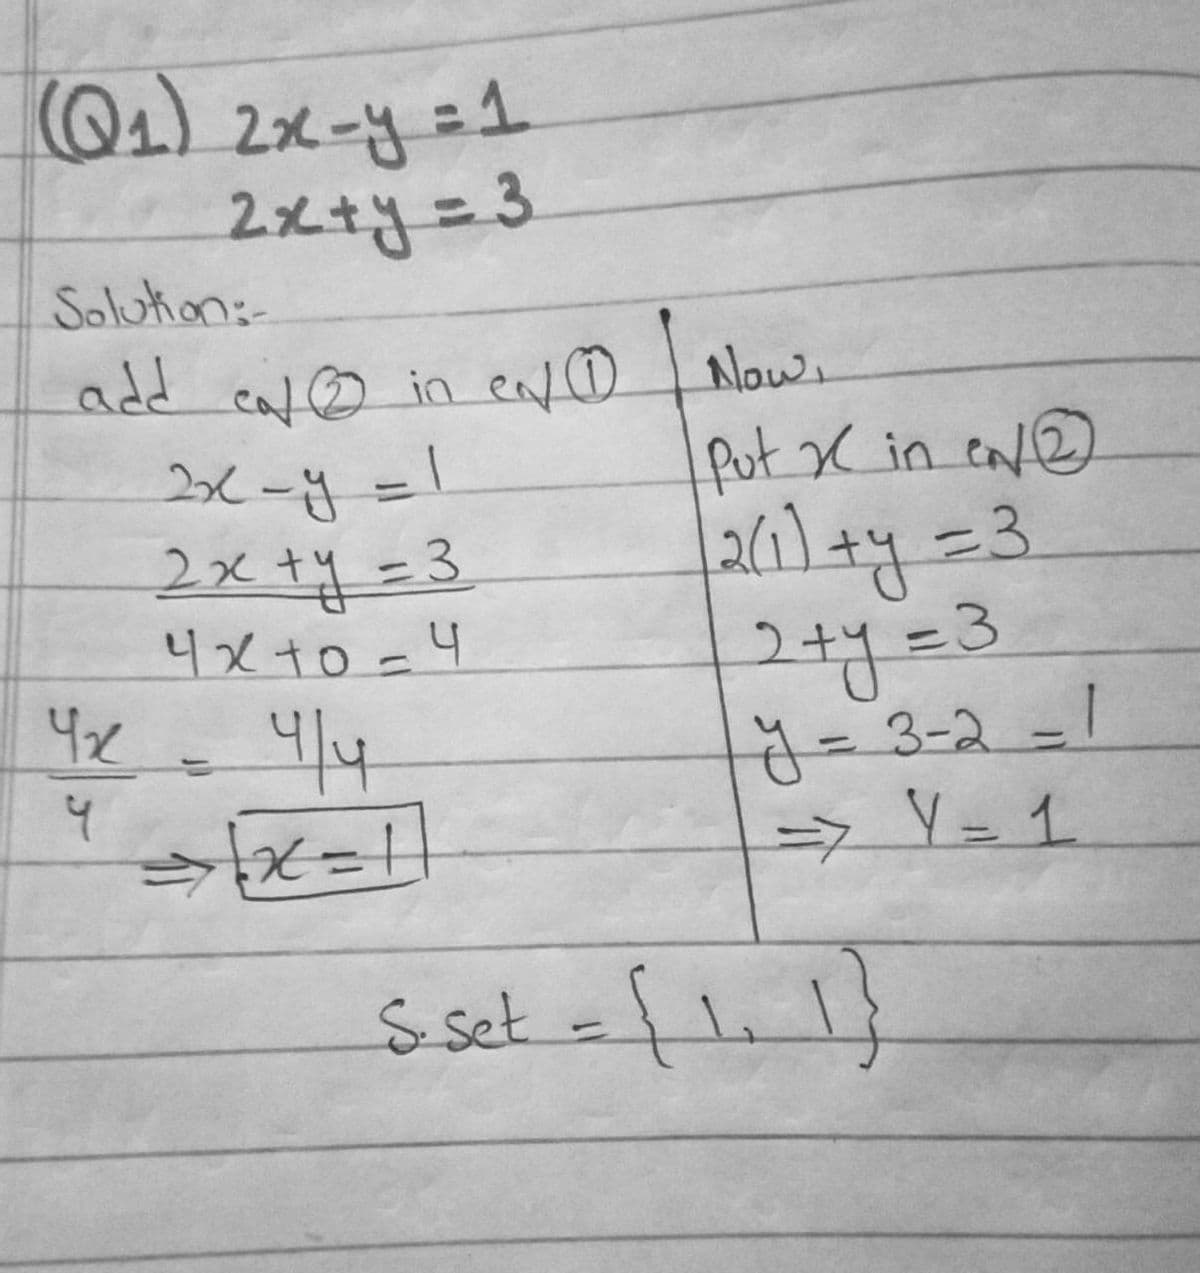 Q) 2メー出=1
2xty%=3
Solution:
add calo in ento Nlows
fut X in ca@
2xty%=3
4xt0 =4
42
4/4
2+y=3
333-2-1
=> Y= 1
s set =fli 1}
